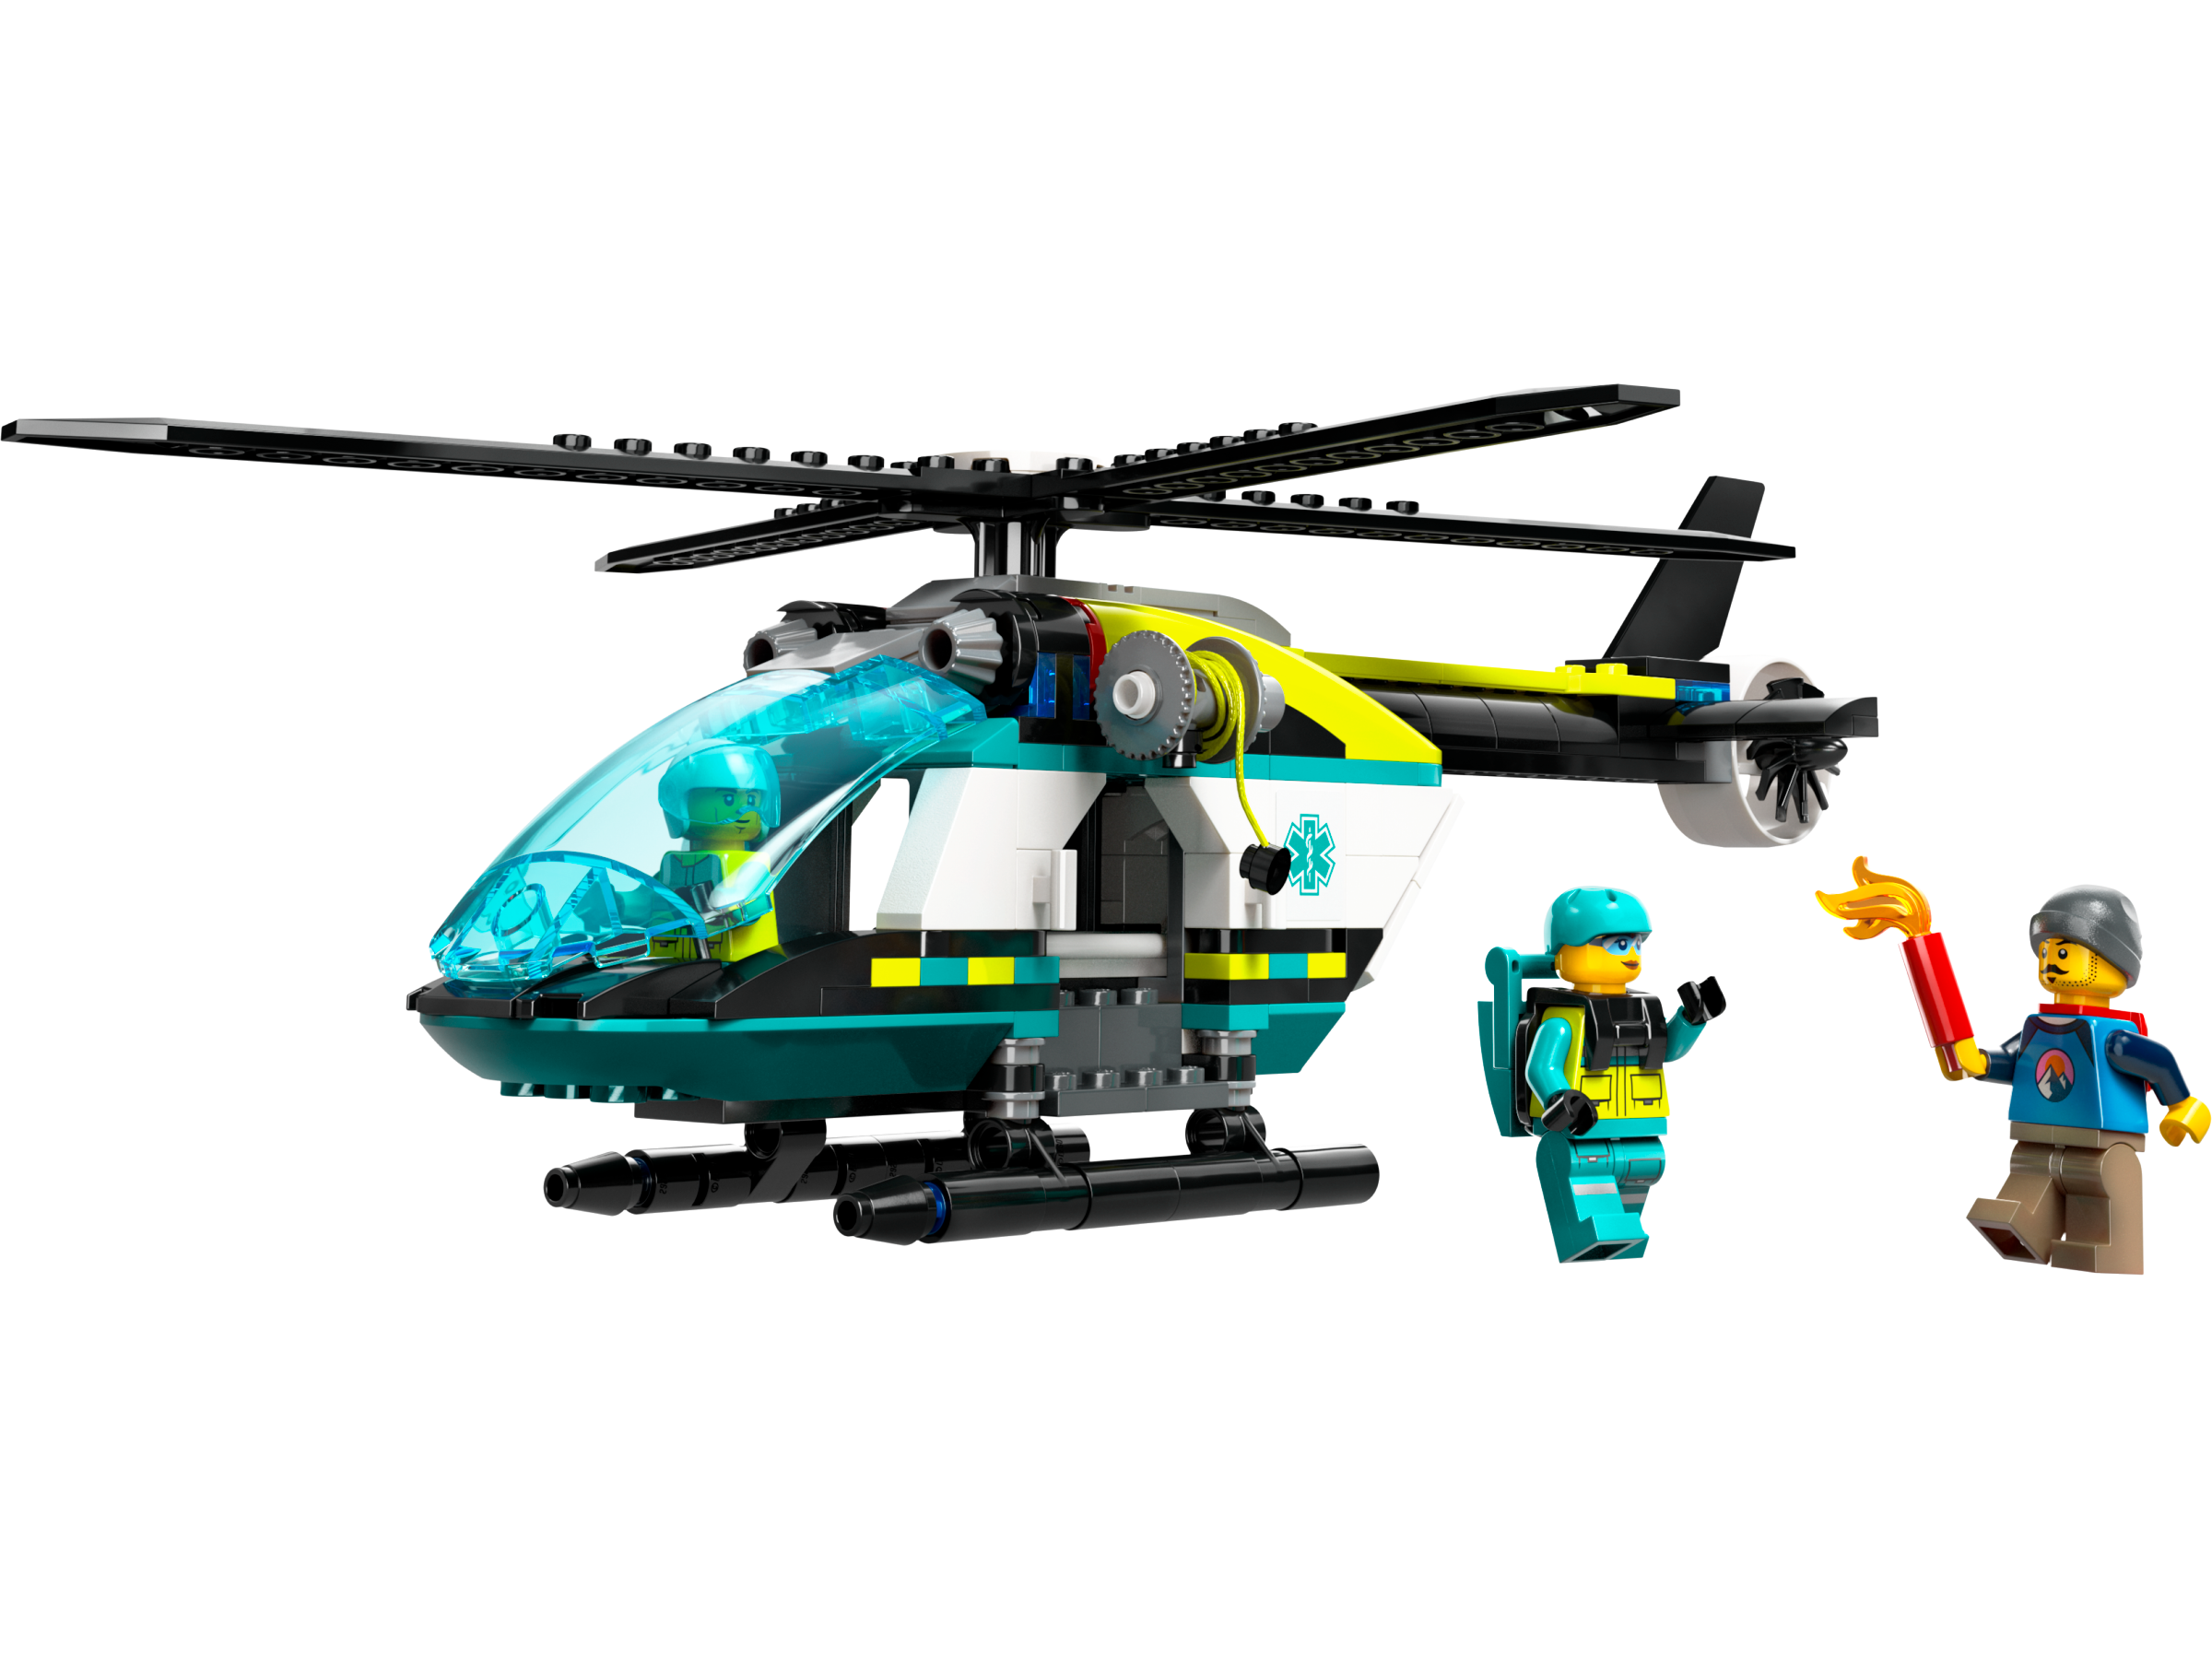 Đồ Chơi Lắp Ráp Trực Thăng Cấp Cứu Chuyên Dụng - Emergency Rescue Helicopter - Lego City 60405 (226 Mảnh Ghép)